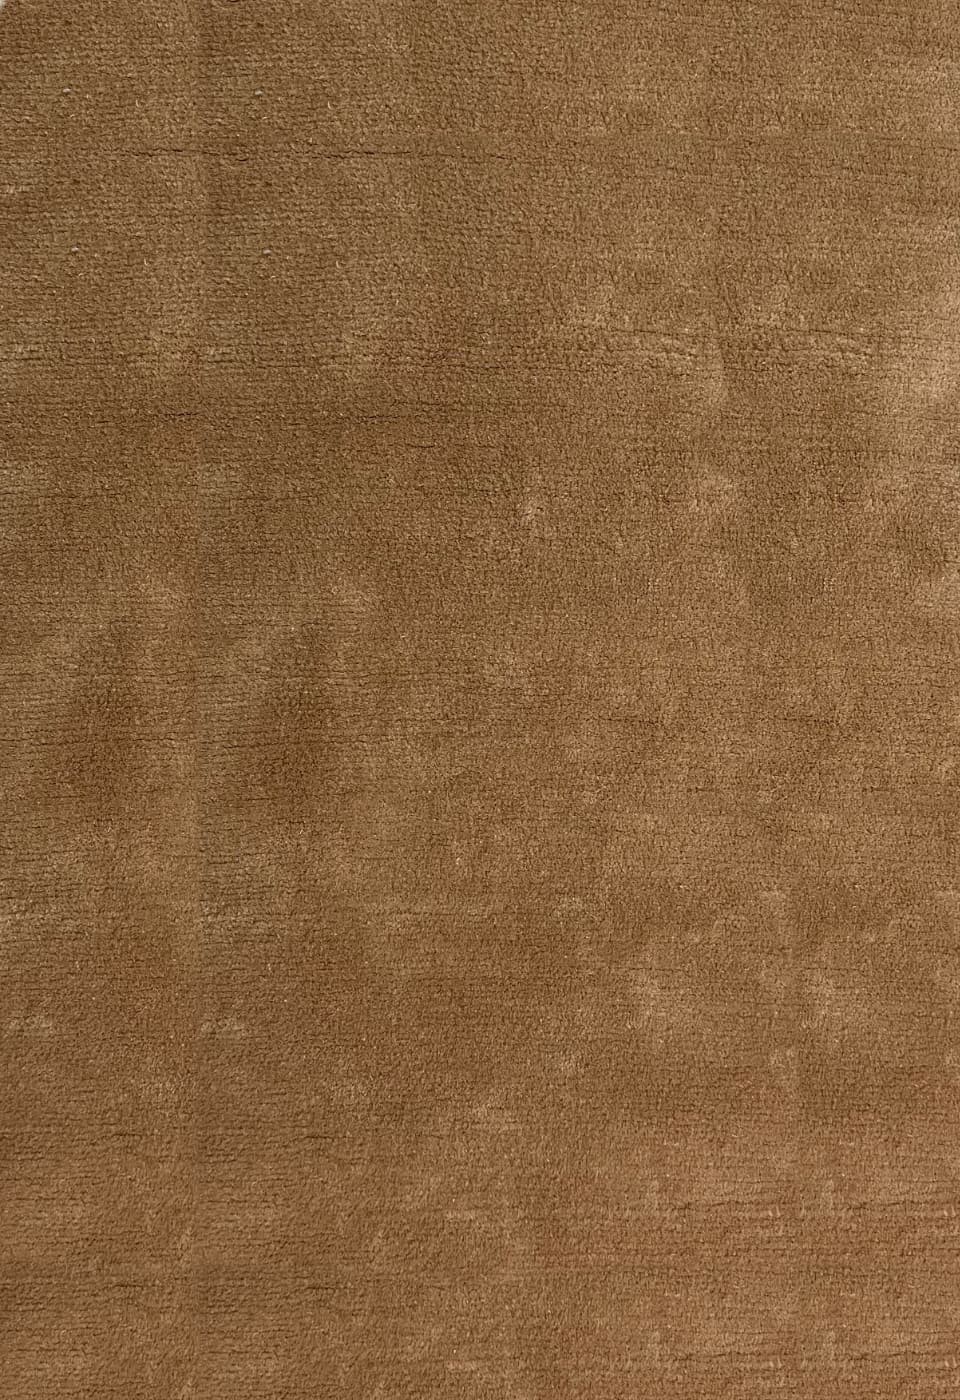 Коричневый шерстяной ковер canvas 711 beige